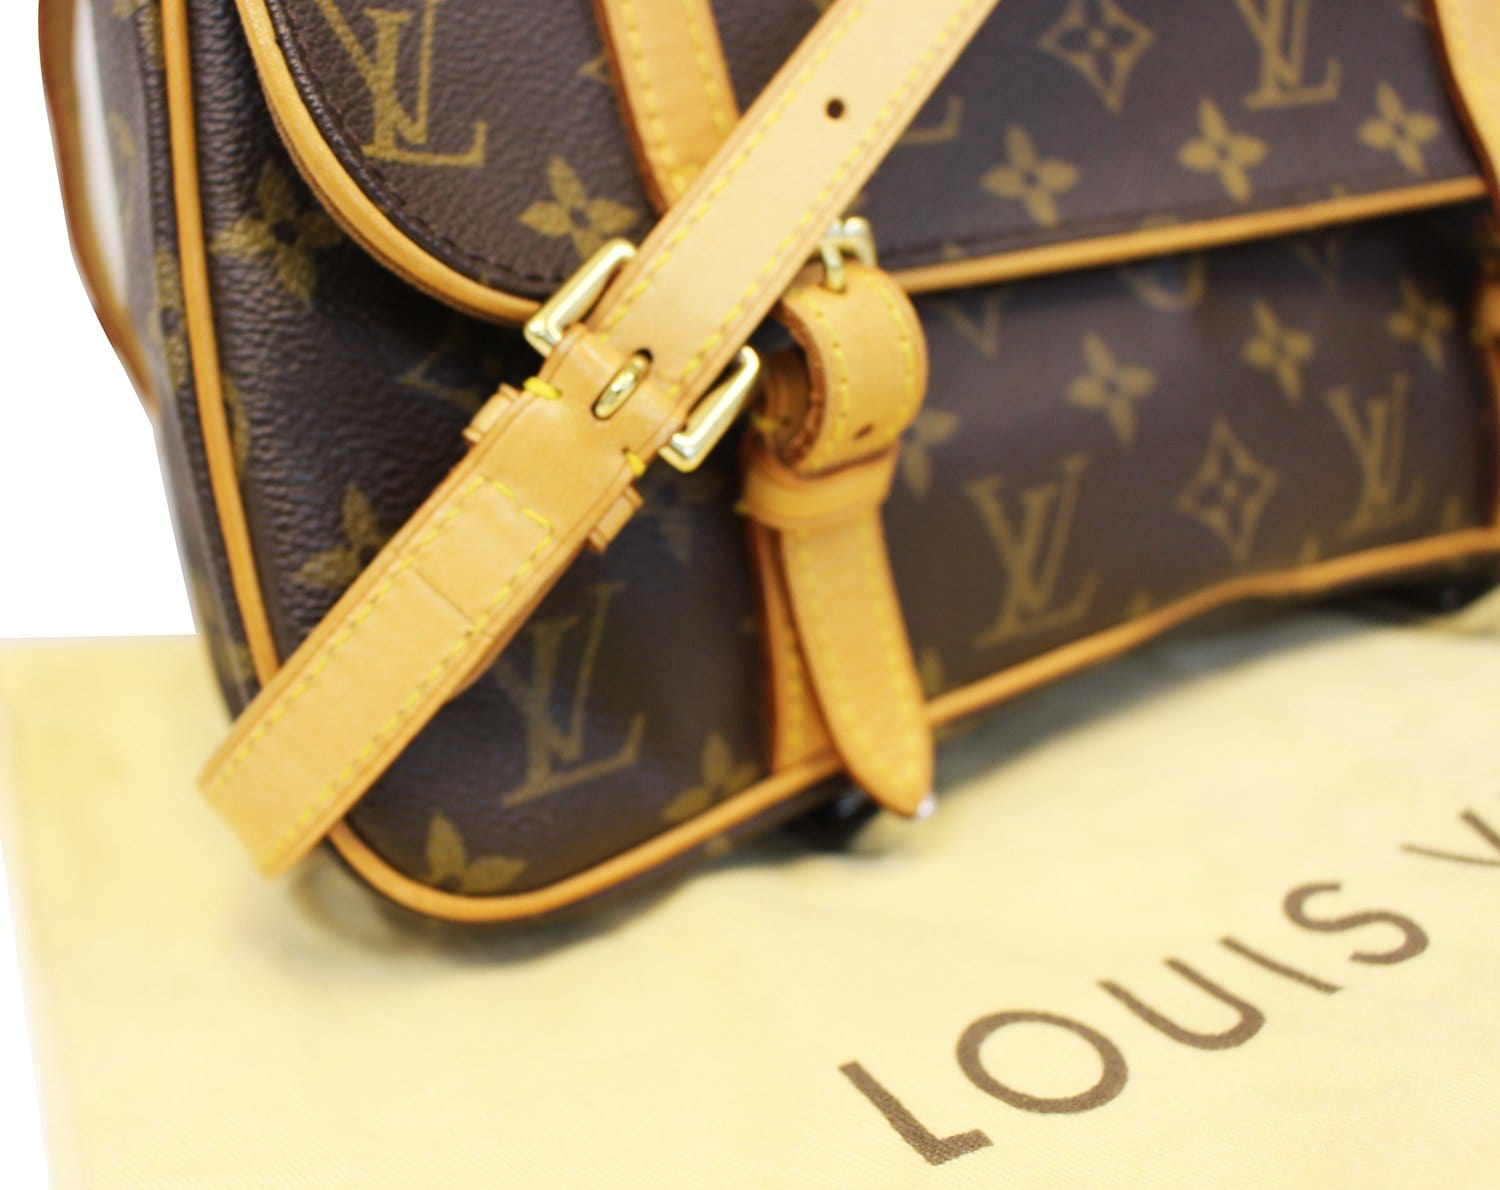 LOUIS VUITTON Monogram Marelle Sac a Dos Convertible Bag